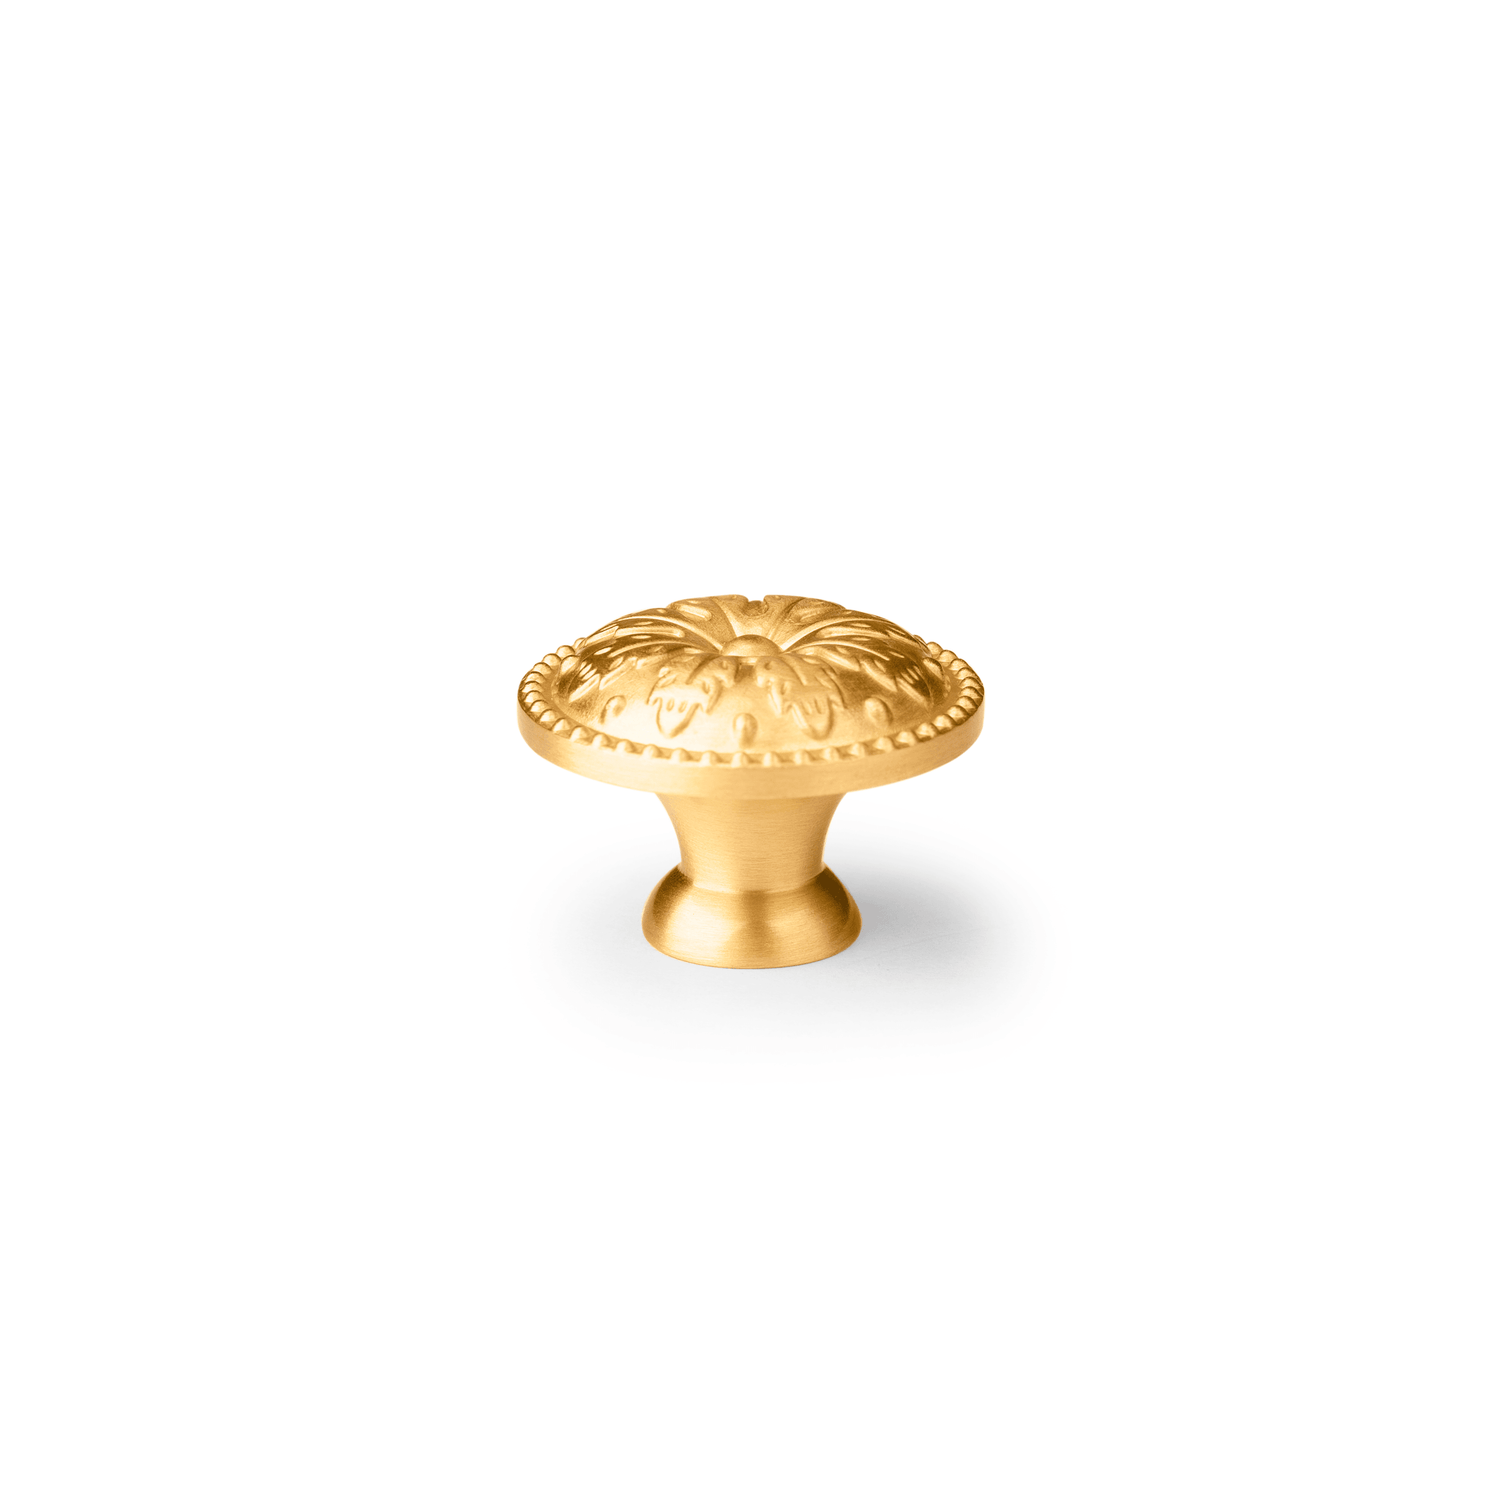 Sovereign Knob - Matte Knob 30mm / Gold / Brass - M A N T A R A